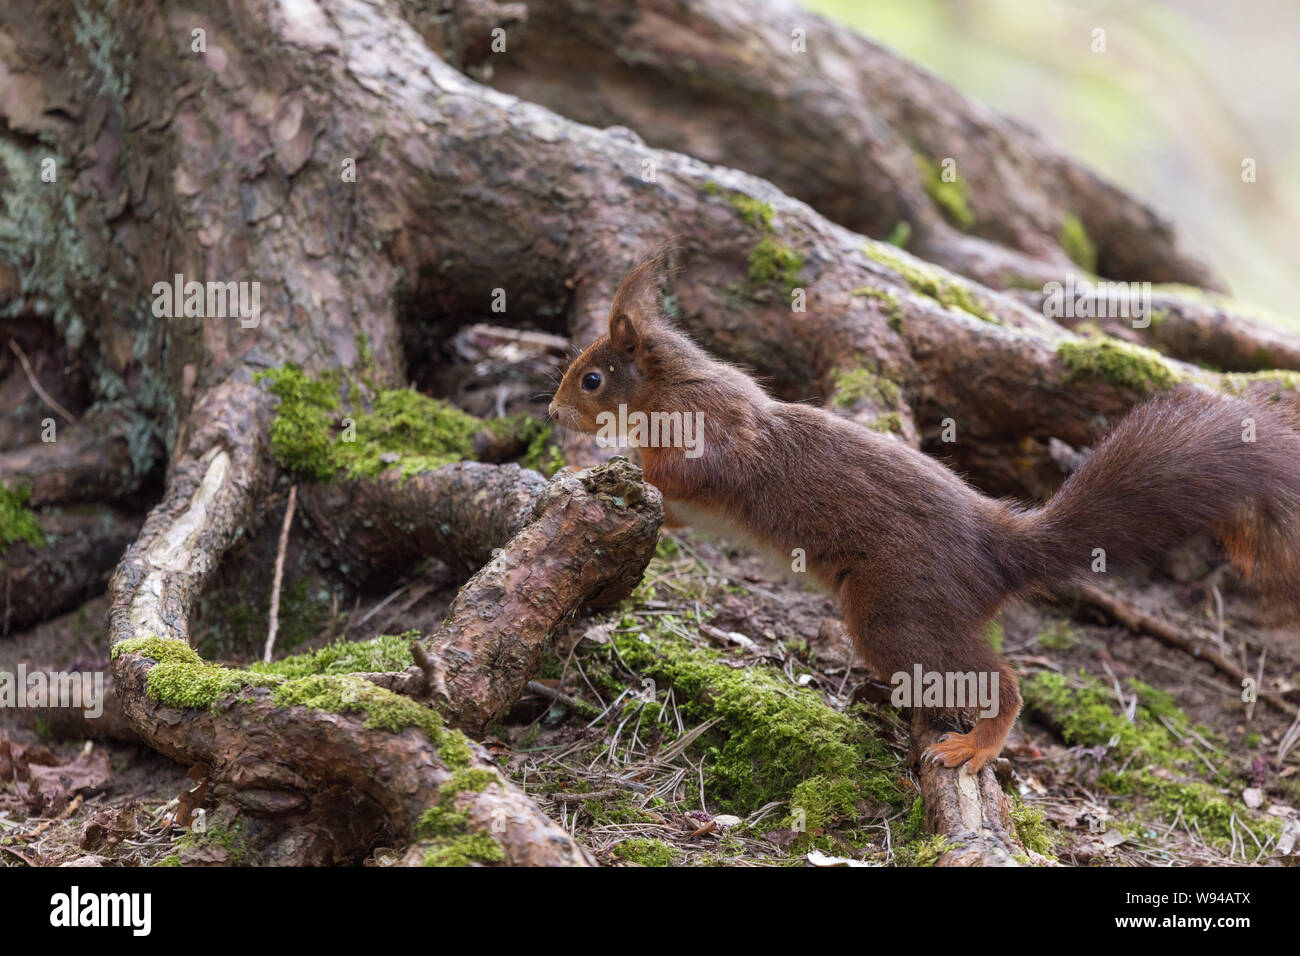 Eichhörnchen native Säugetier Nagetier Tier niedliche pelzige sciurus vulgaris Stockfoto